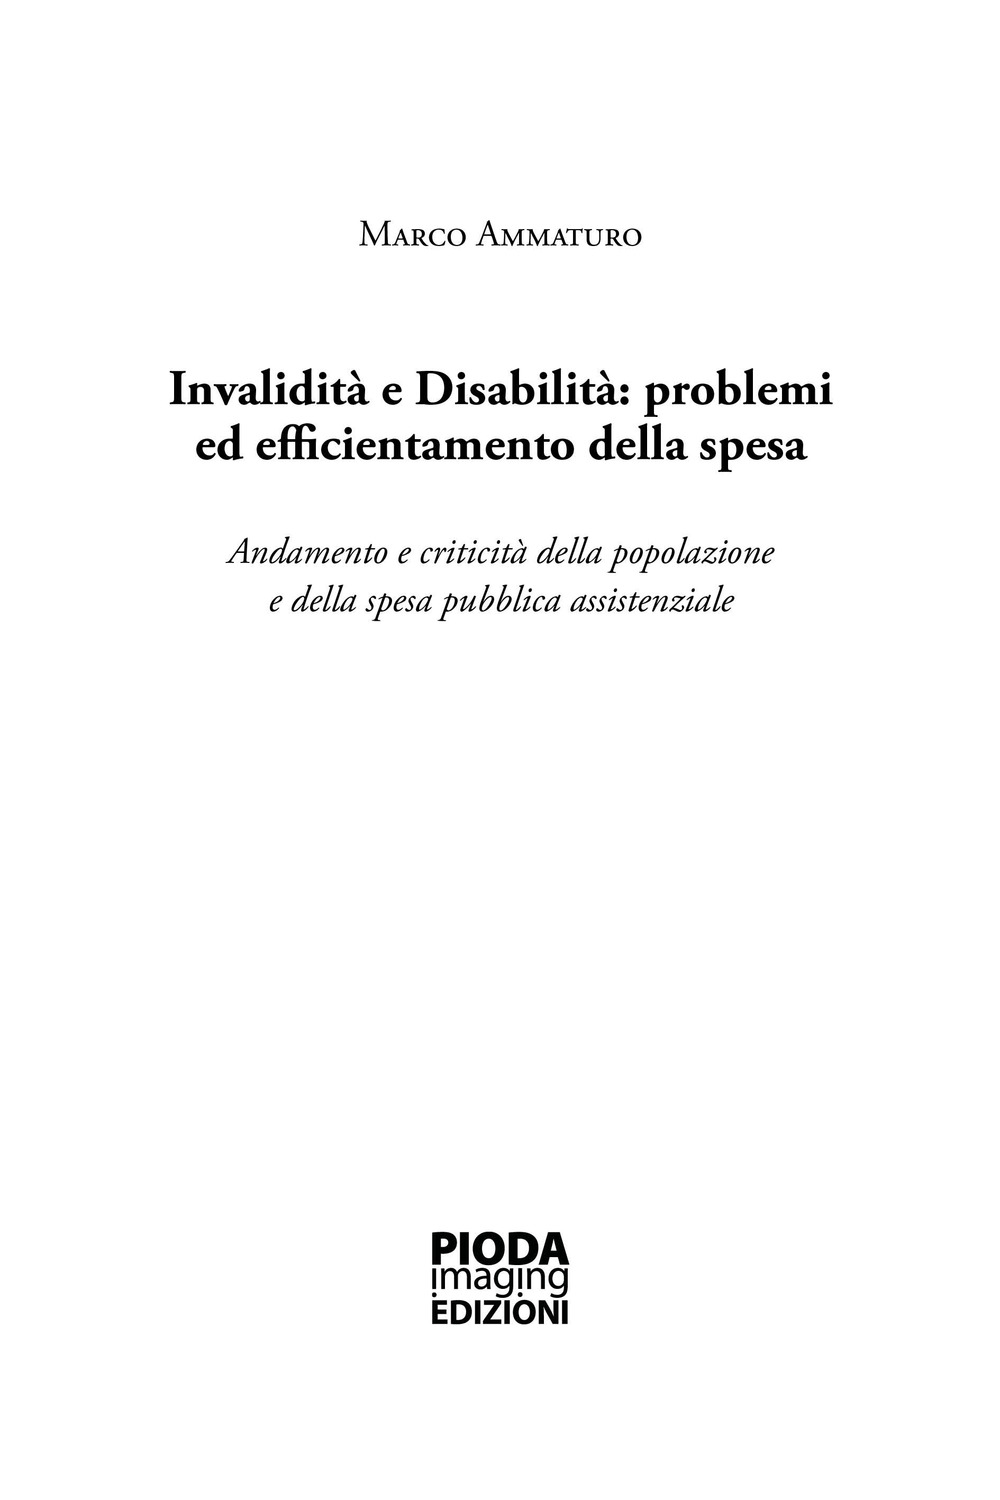 Invalidità e disabilità: problemi ed efficientamento della spesa. Andamento e criticità della popolazione e della spesa pubblica assistenziale